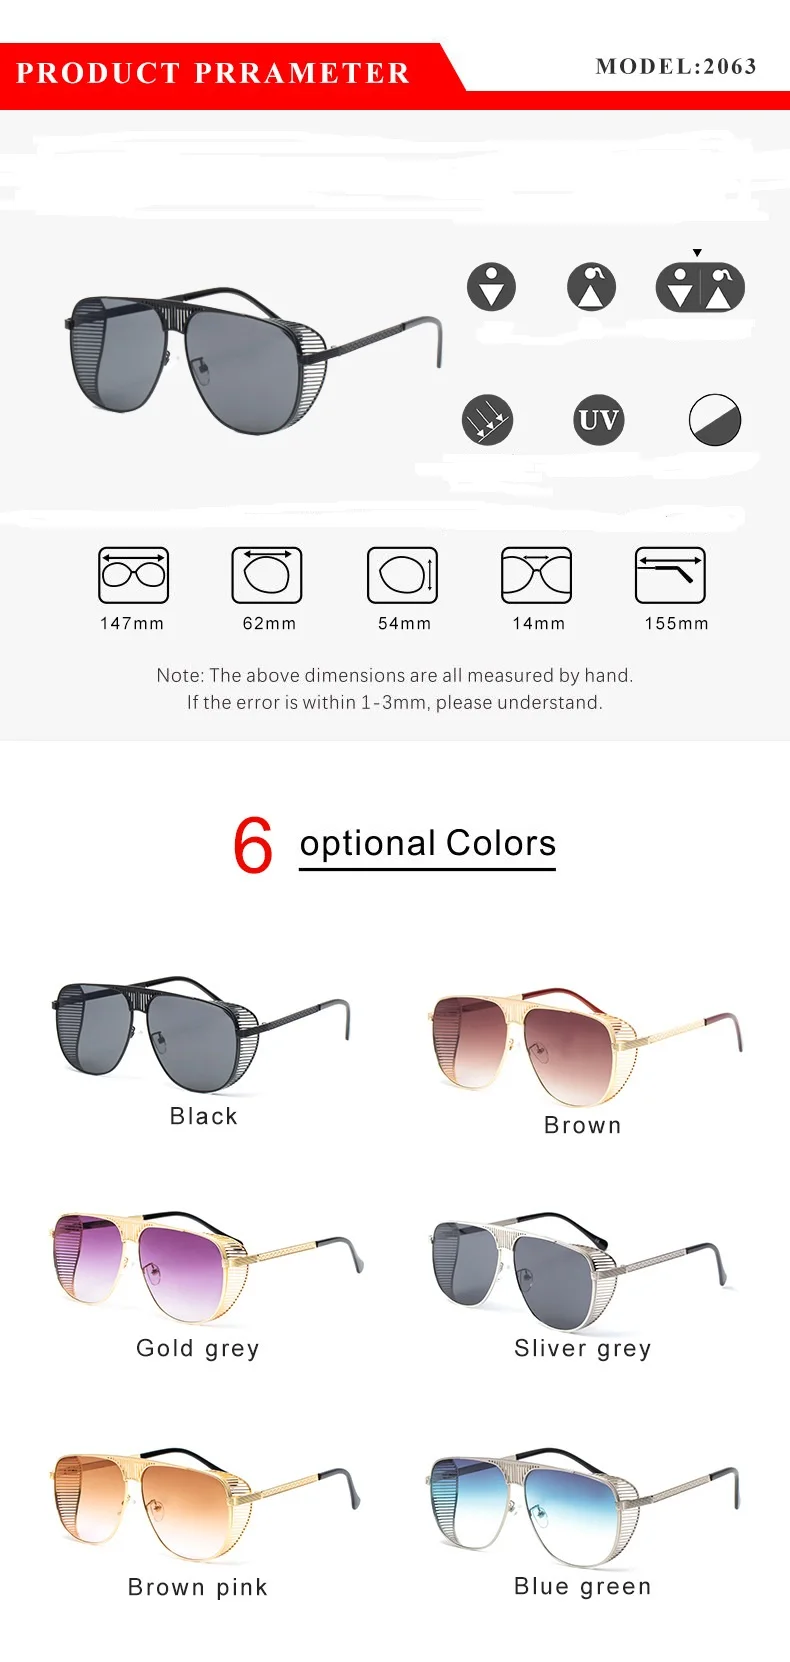 2019 женские солнцезащитные очки в стиле стимпанк мужские ретро-очки круглые флип-очки паровые панк винтажные модные очки UV400 защита